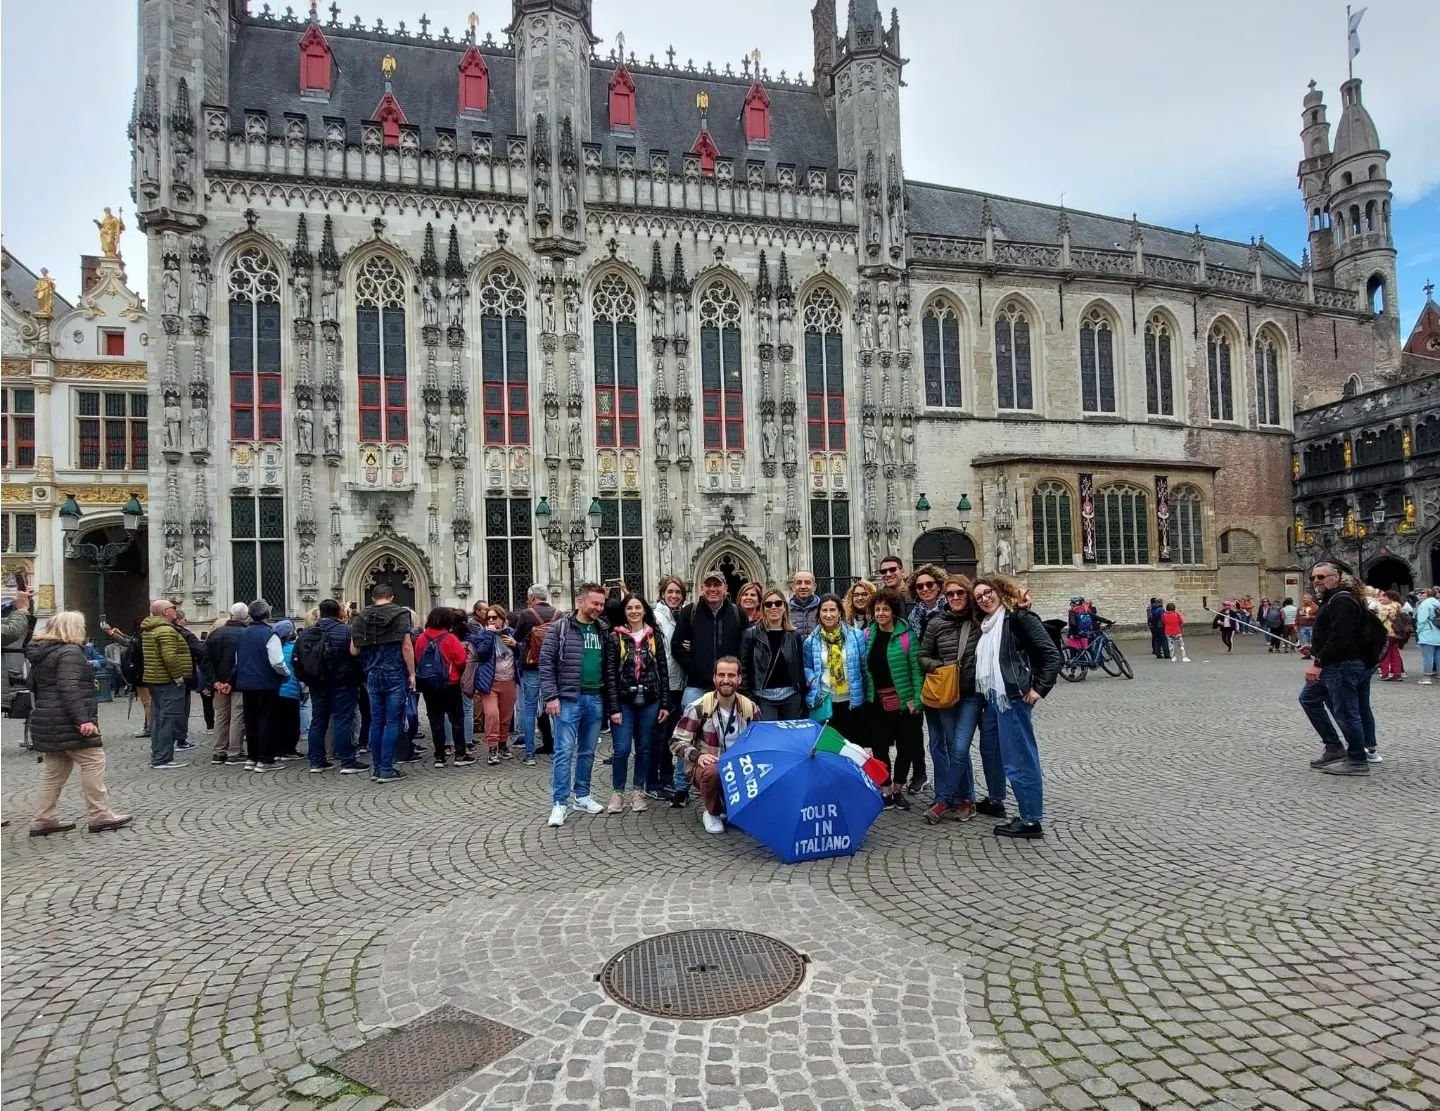 #SempreAZonzo 🔥🔥🔥
#AZonzoTour il tour degli italiano in Belgio!!! 
Free tour di Bruxelles 🇮🇹🇮🇹🇮🇹
Tour del quartiere europeo 🇪🇺🇪🇺🇪🇺
Free tour di #Bruges 🏠 💒 🏡
Tour di #Colonia e #Aquisgrana 🇩🇪
Tour di #Marsiglia 🇫🇷
. 
Potete pren